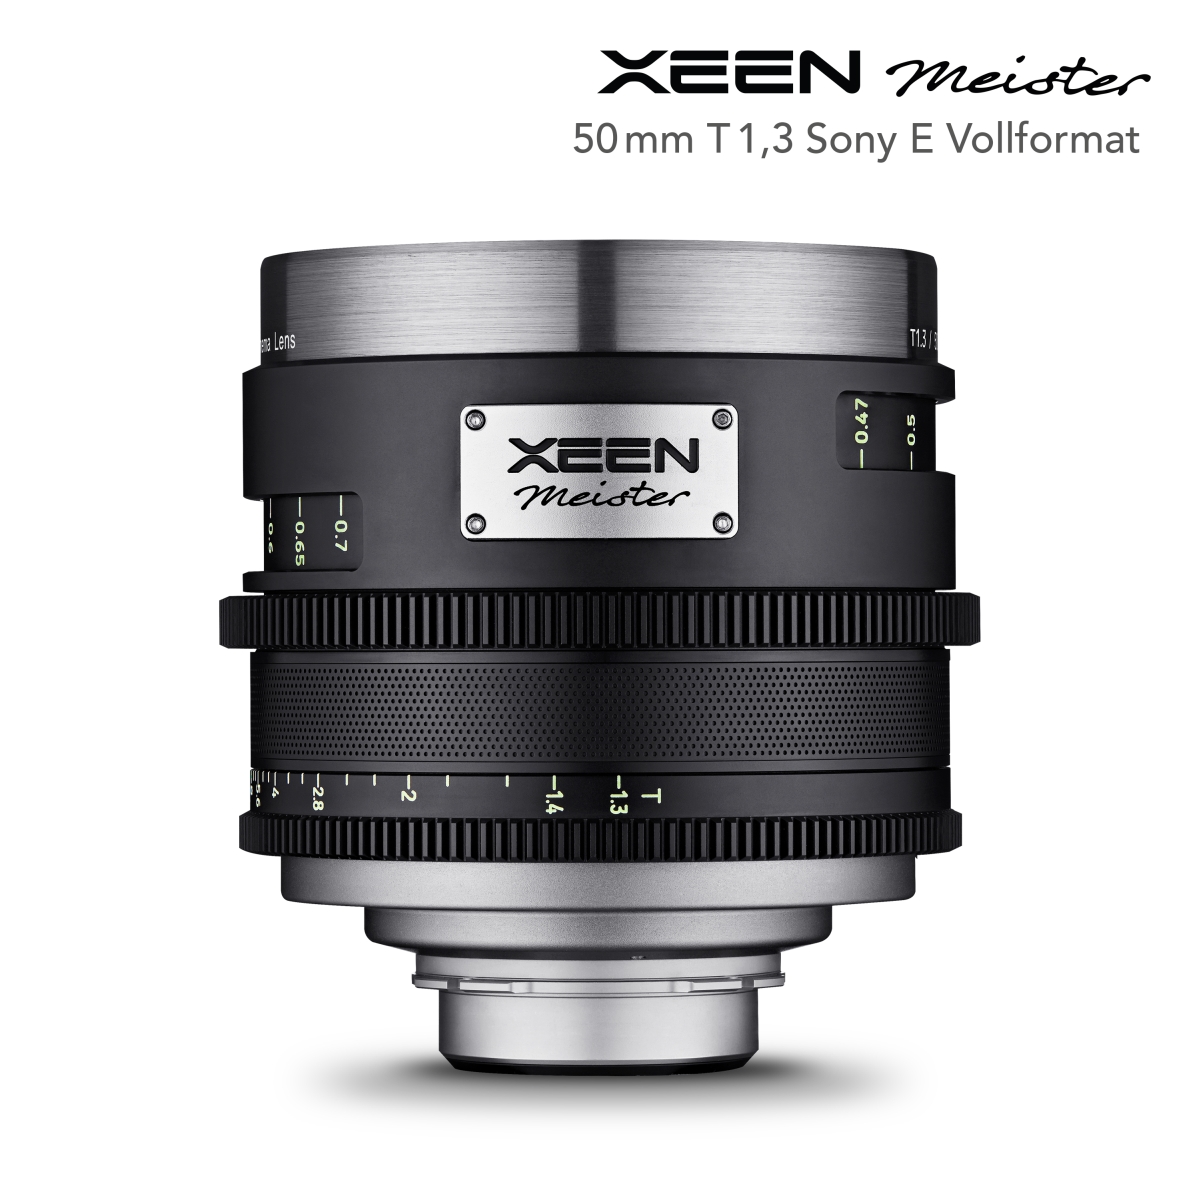 XEEN Meister 50mm T1.3 Sony E Vollformat